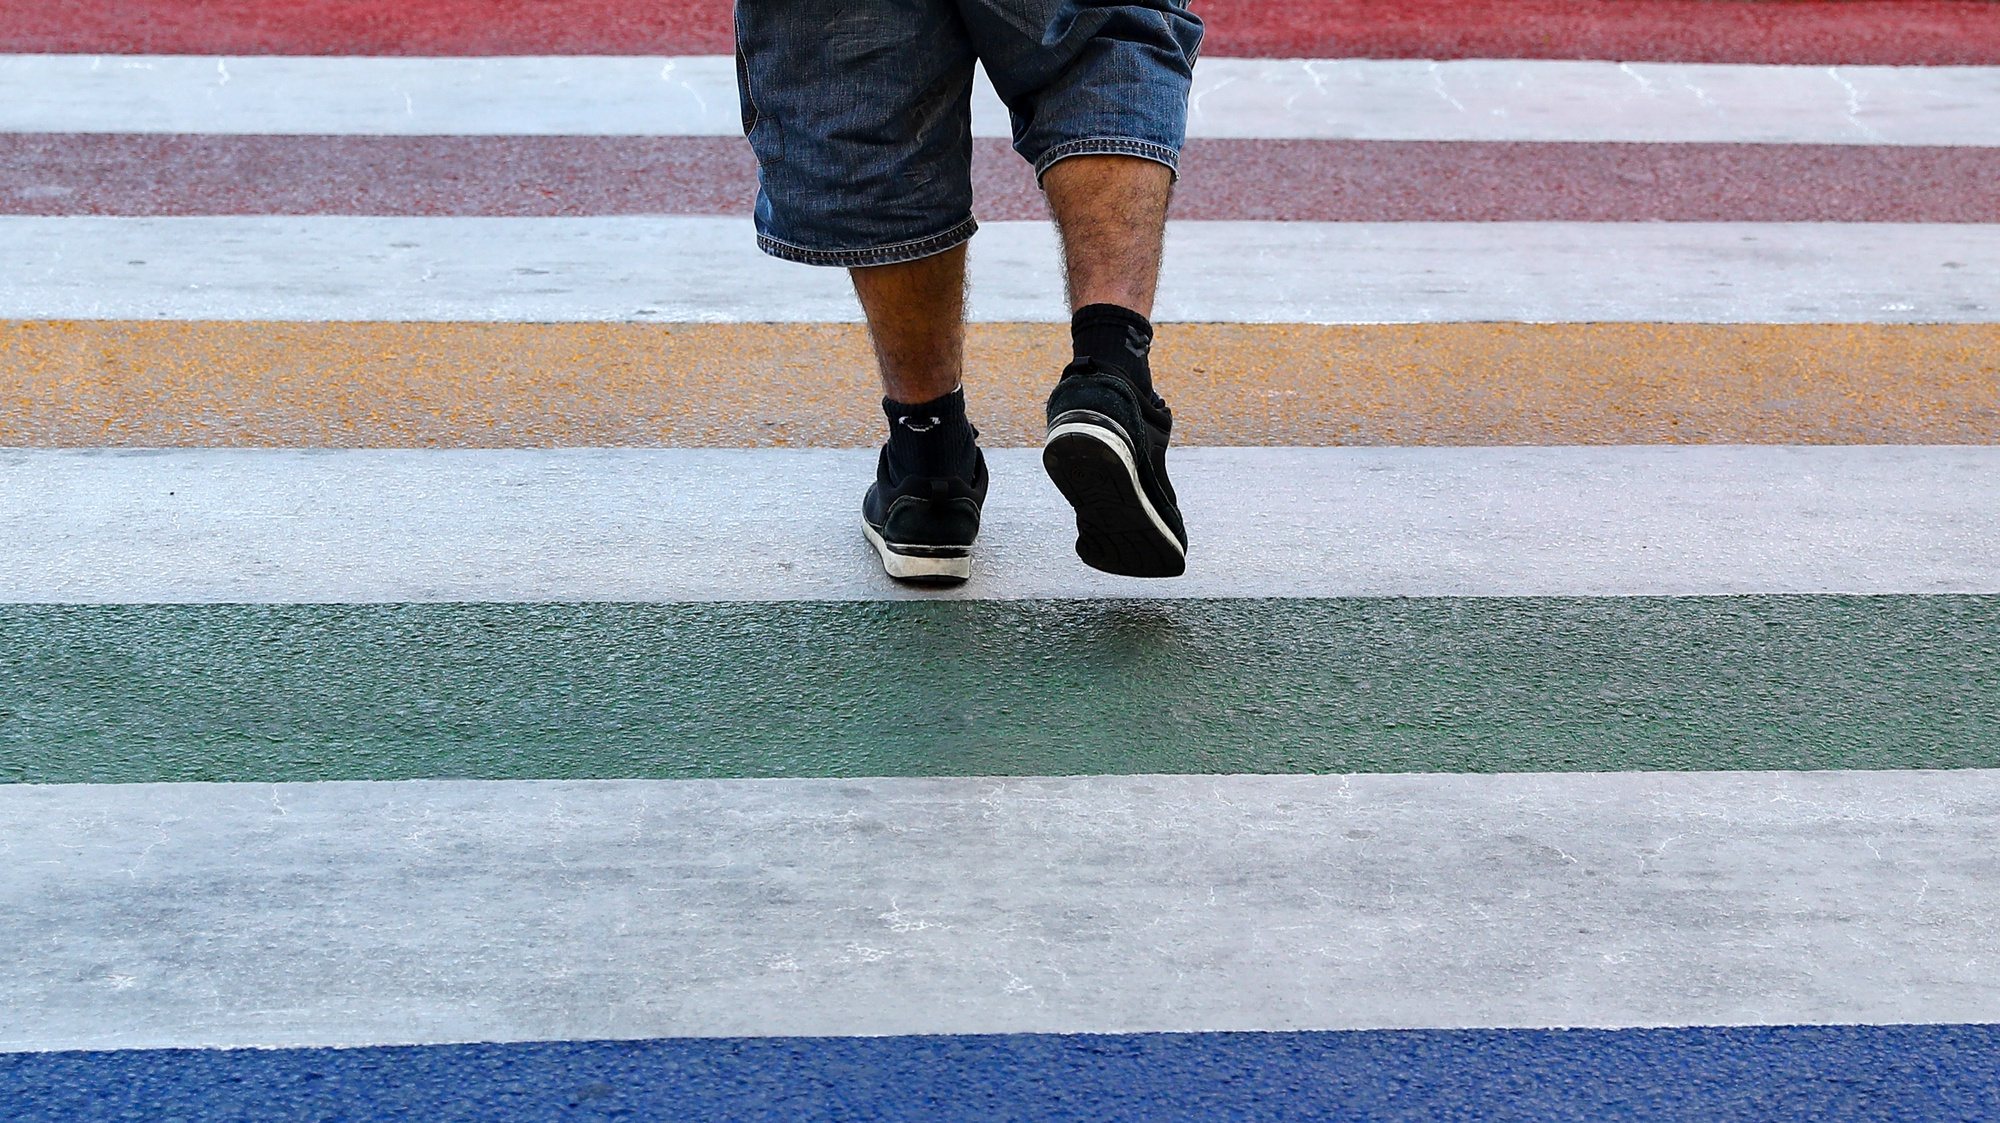 A Junta de Freguesia de Campolide decidiu retirar as cores do arco-íris das passadeiras de peões, na sequência de uma recomendação da Autoridade Nacional de Segurança Rodoviária (ANSR), e vai pintar os pilaretes, informou hoje a autarquia lisboeta, Lisboa, 14 de maio de 2019. ANTÓNIO COTRIM/LUSA